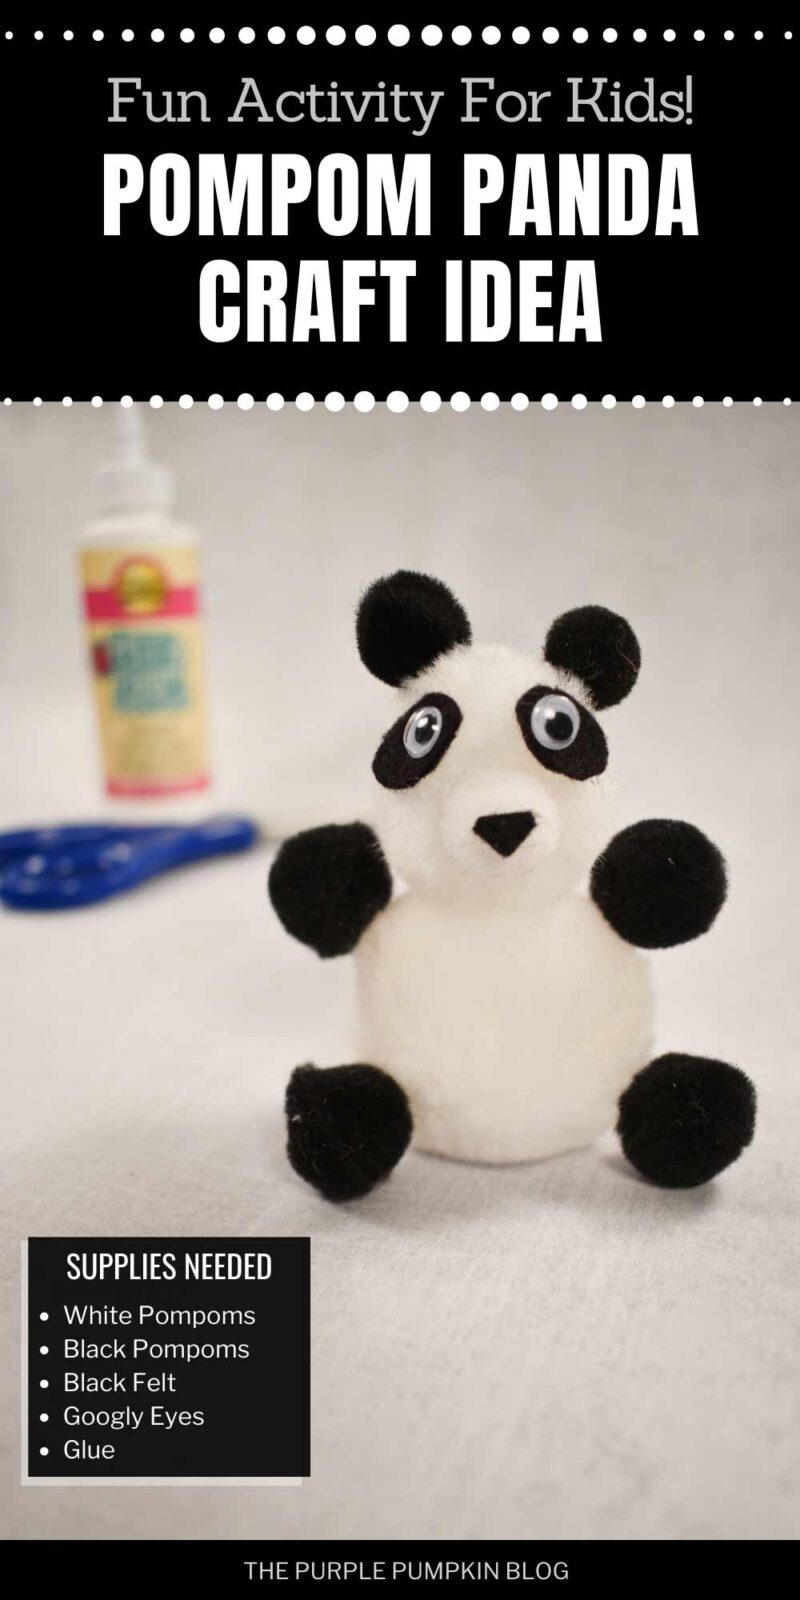 Craft Supplies for Pompom Panda Craft